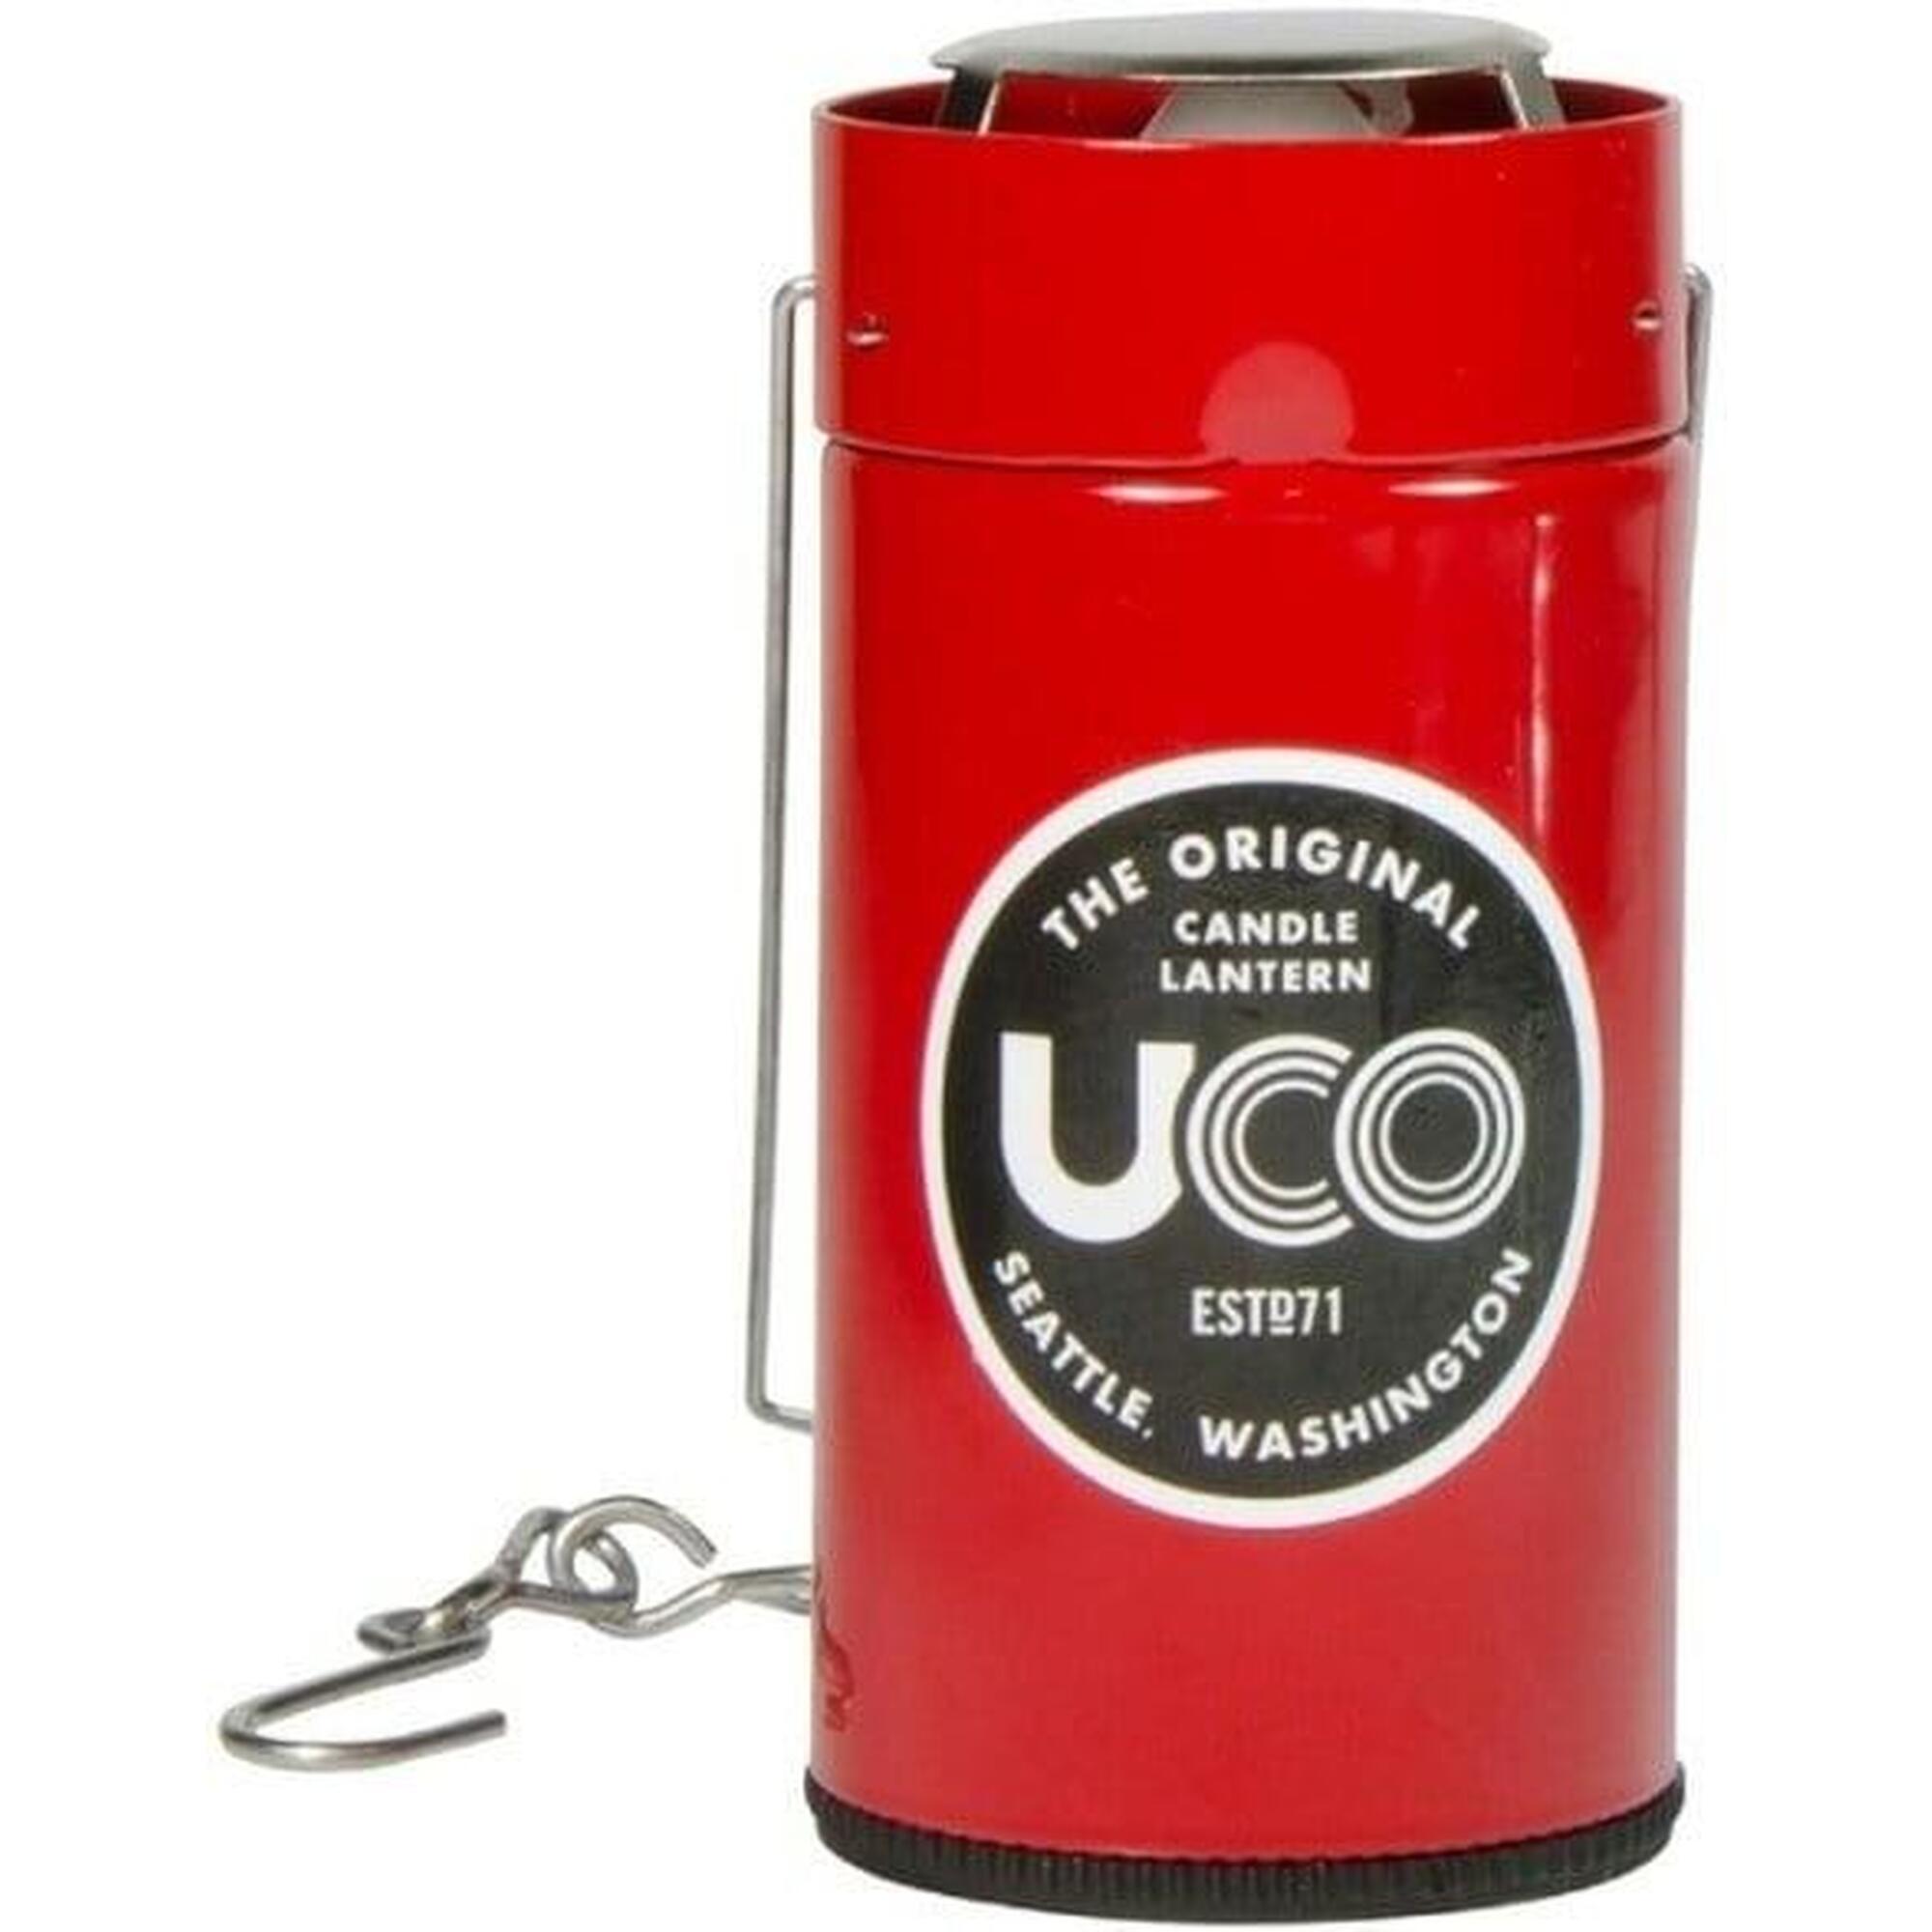 UCO Original Candle lantern Red